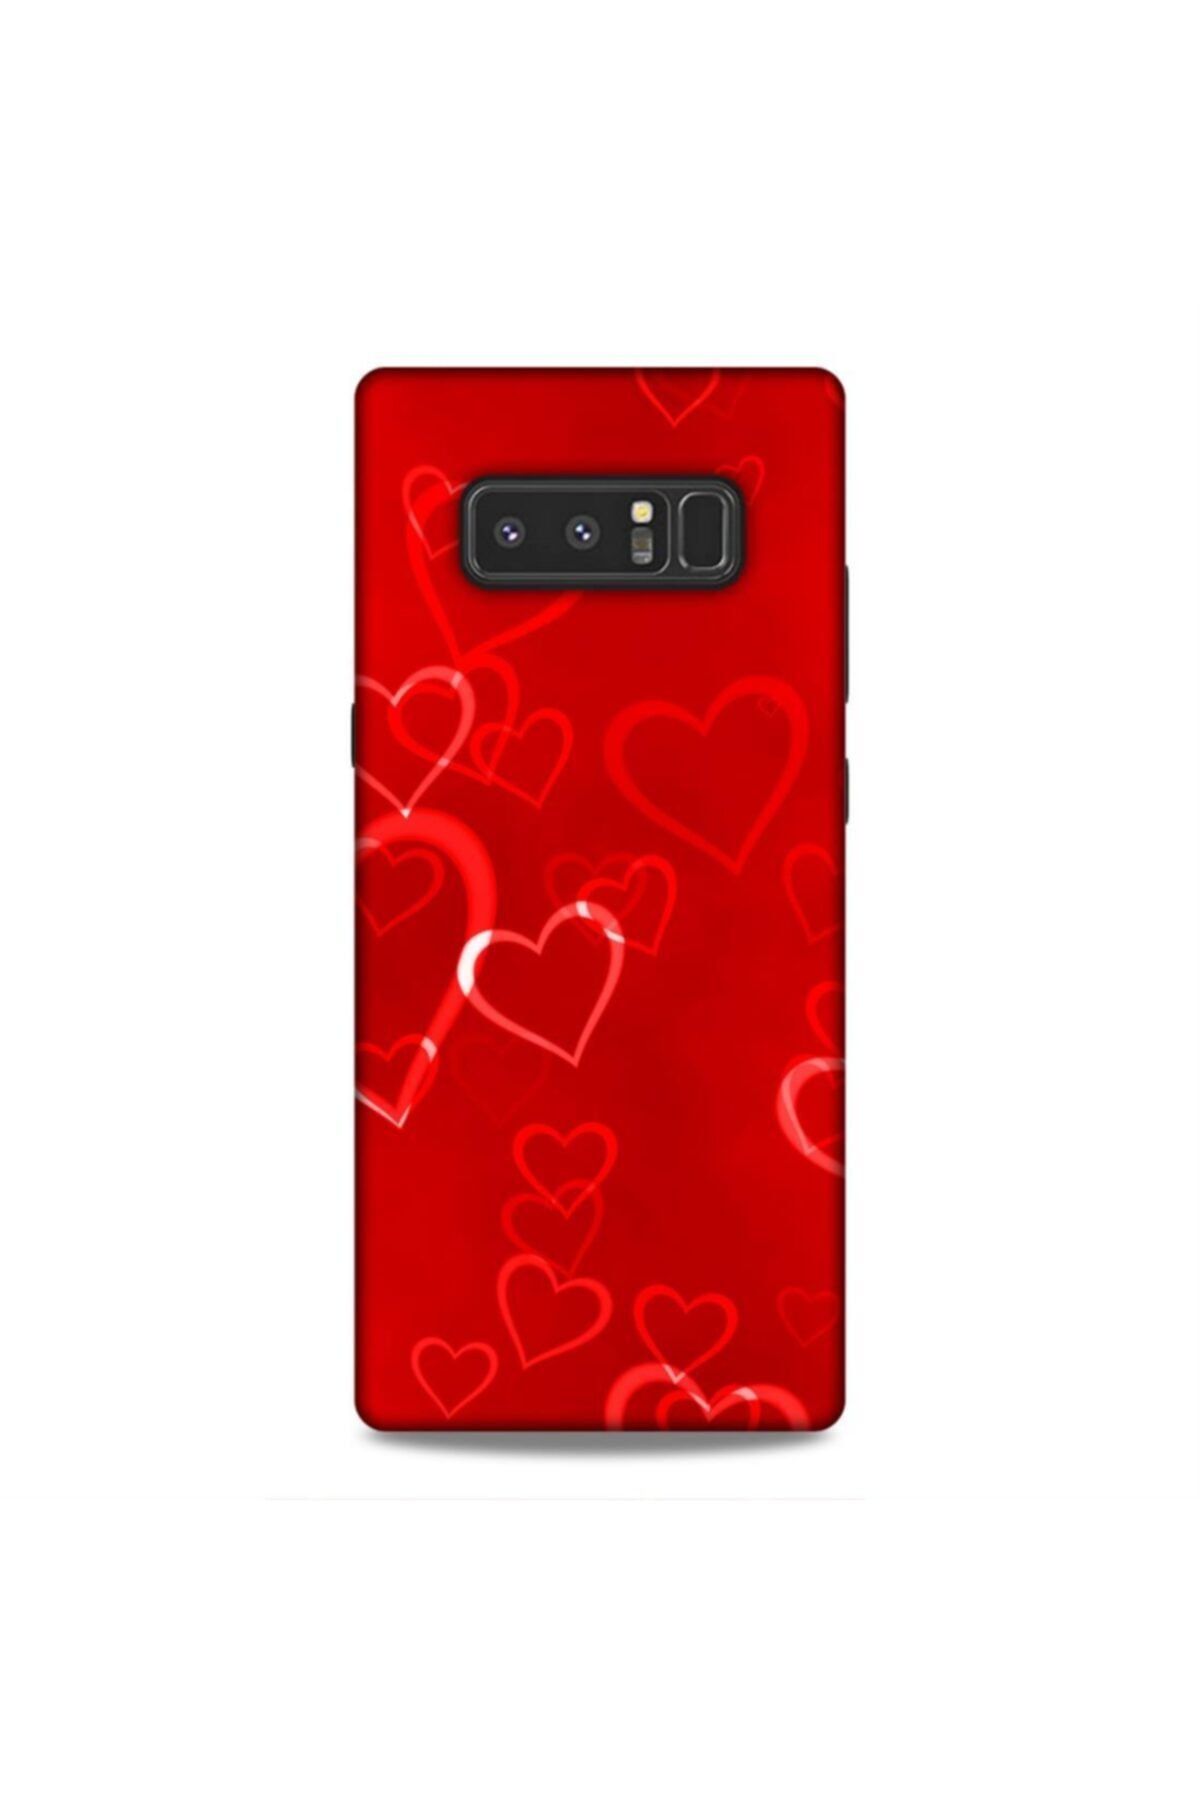 Pickcase Samsung Galaxy Note 8 Kılıf Desenli Arka Kapak Kırmızı Kalpler